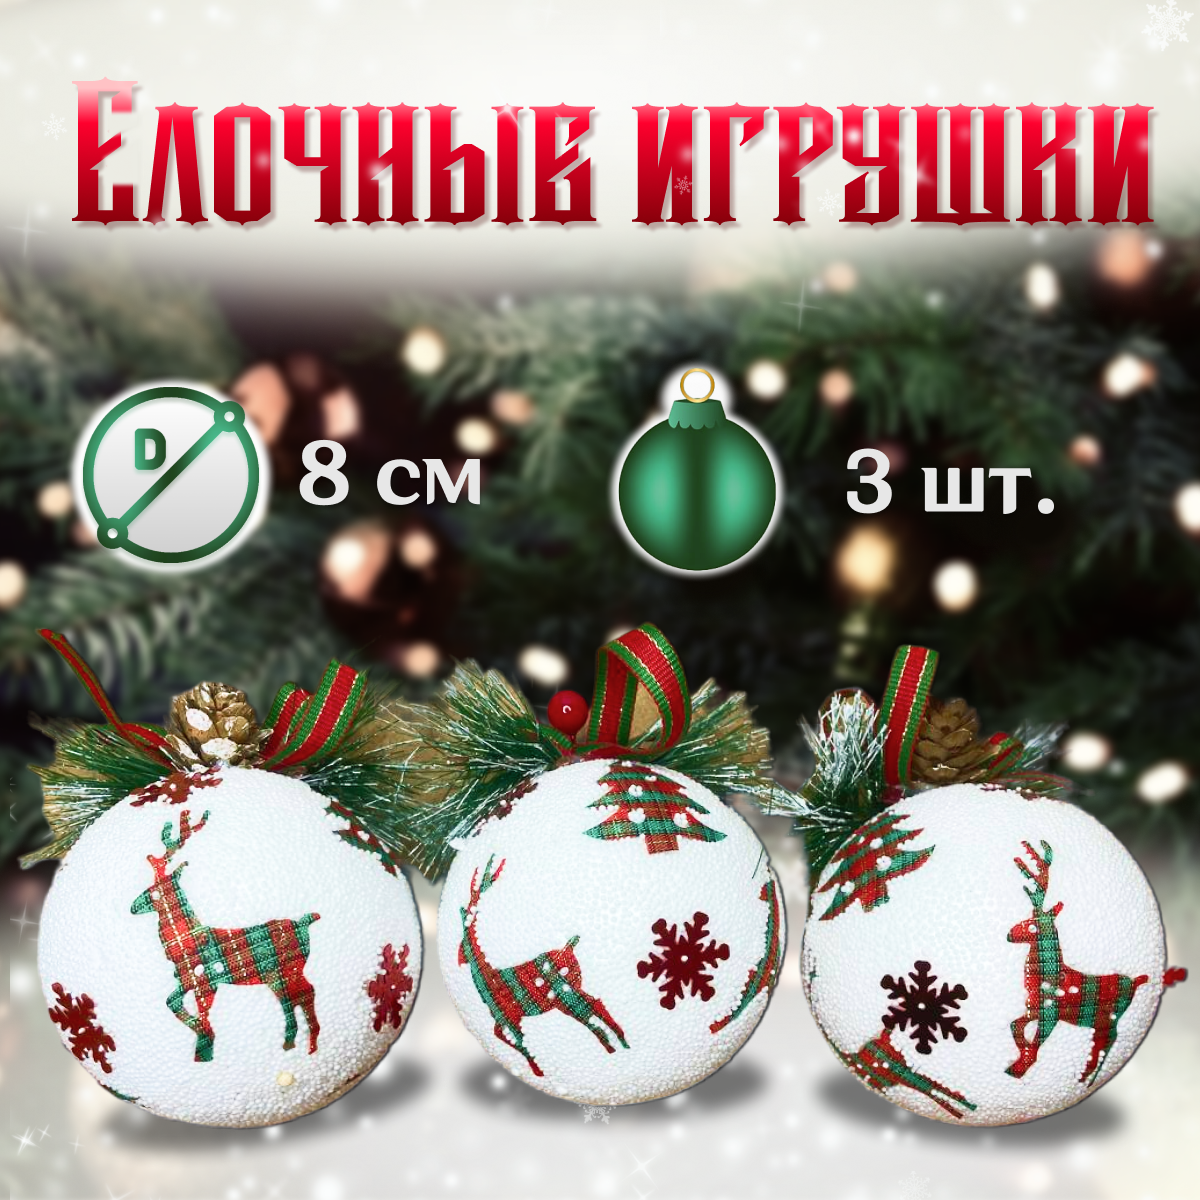 Набор елочных шаров "Снежное рождество" 3 шт. / Елочные игрушки украшения на новый год